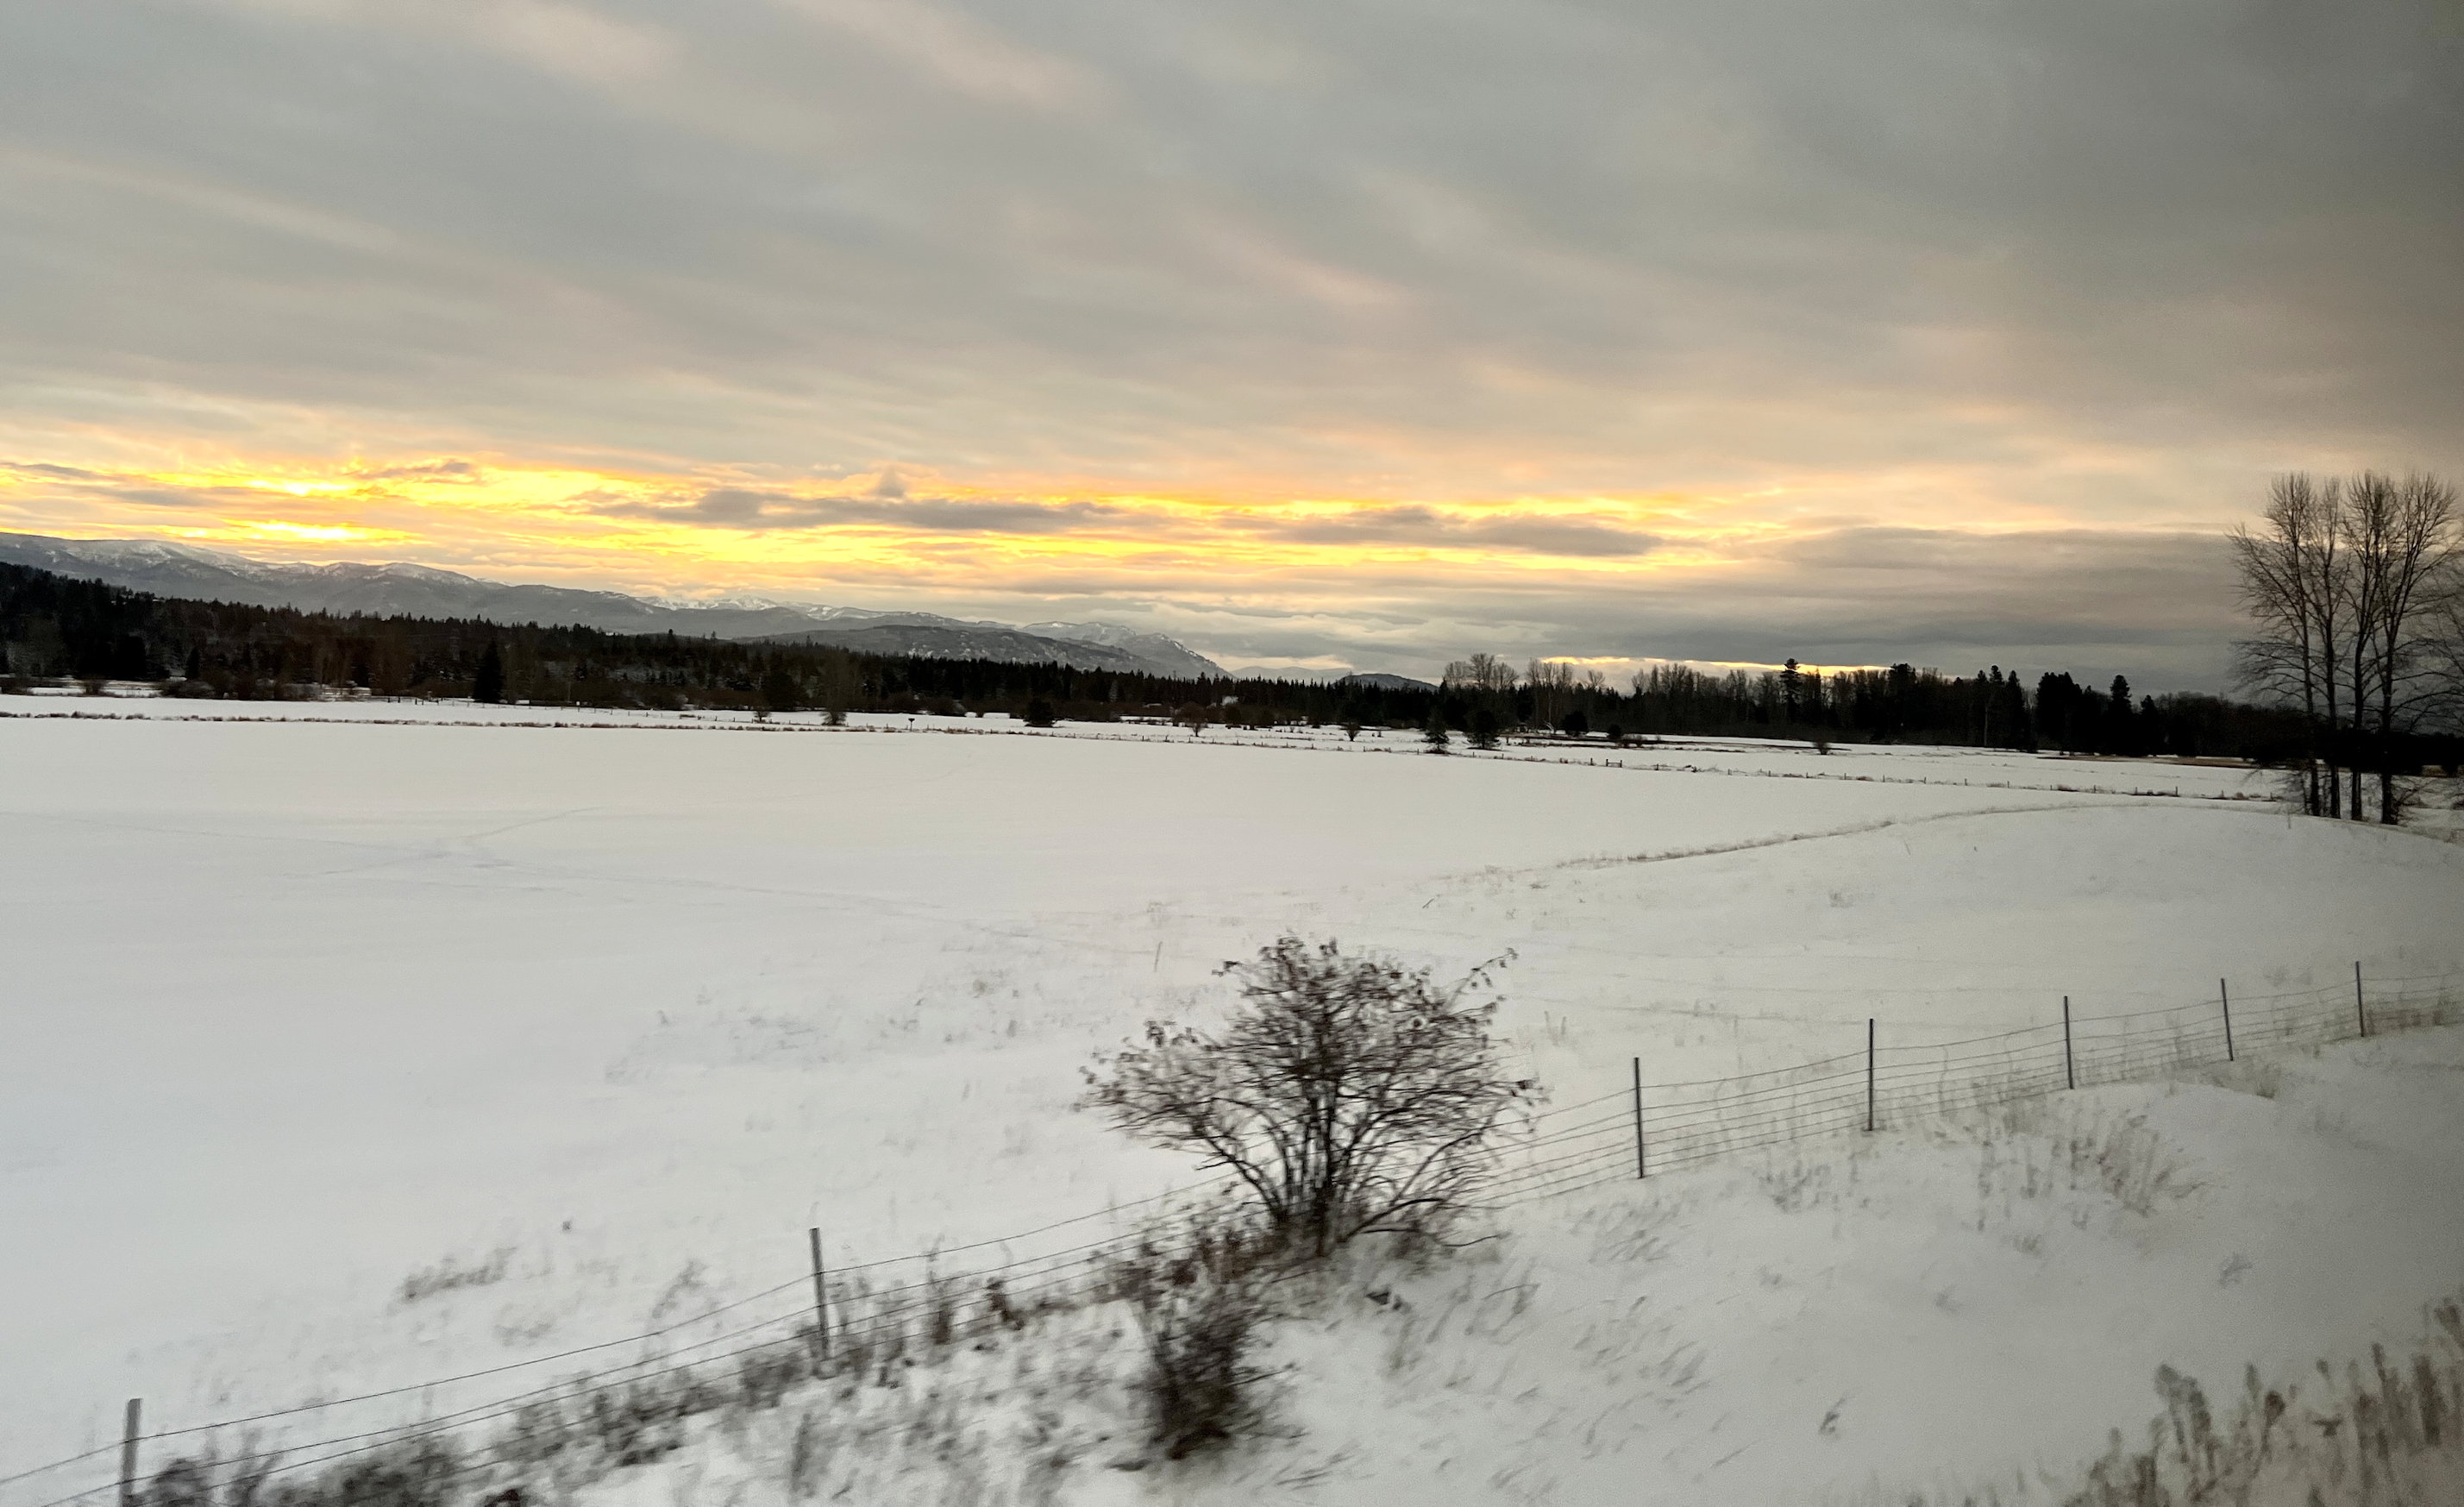 Winterlandschaft in der Nähe von Sandpoint, Idaho. Der Himmel ist am Horizont schwefelgelb. Im Vordergrund viel Schnee und ein paar Büsche und Bäume